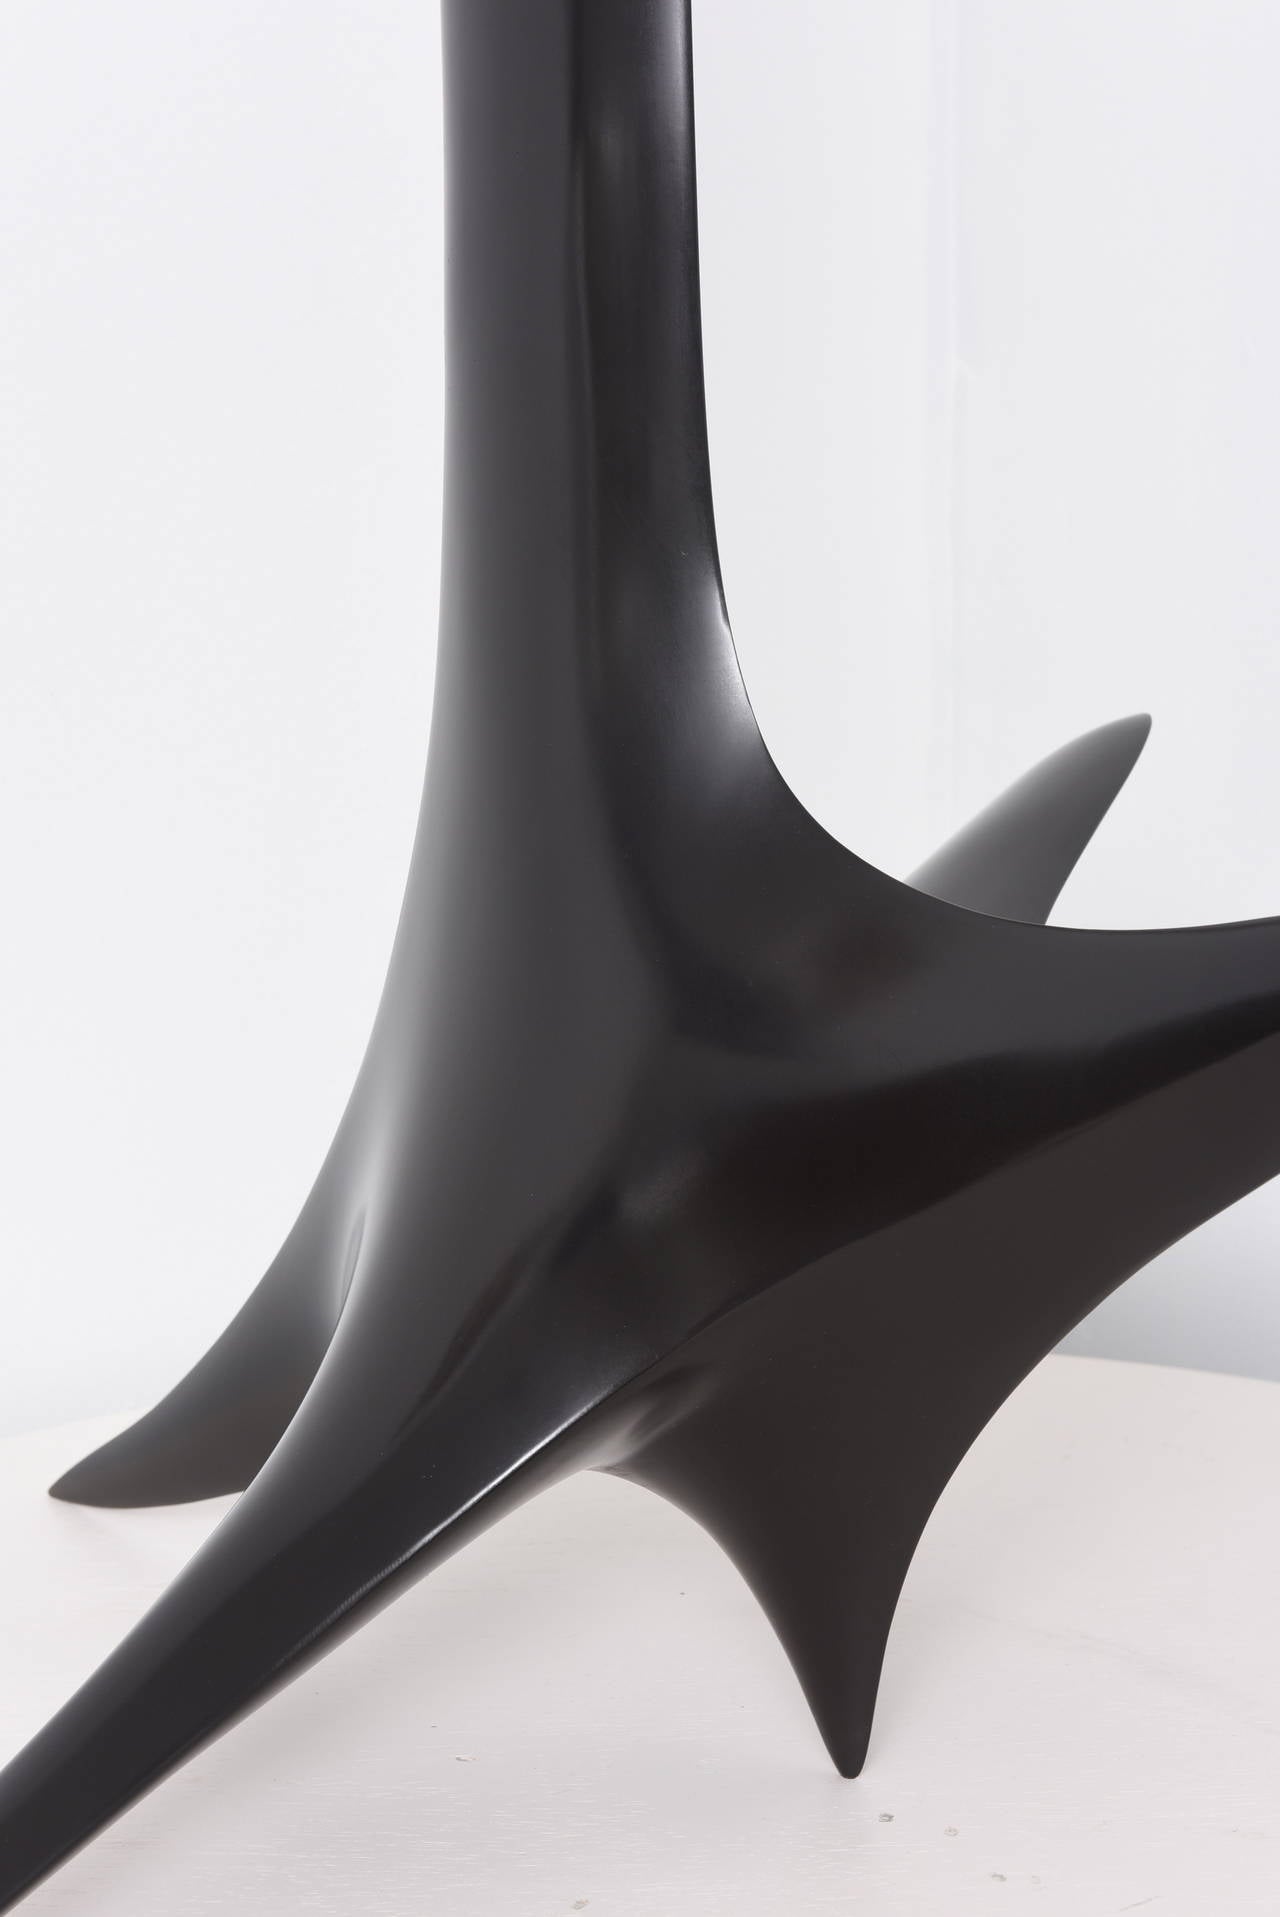 Icare ist eine hohe abstrakte Skulptur mit schwarzer Patina, die von Patrice Breteau, einem französischen zeitgenössischen Künstler, geschaffen wurde. Diese sehr schlanke Bronzeskulptur ist in verschiedenen Patinas erhältlich.

Nach dem